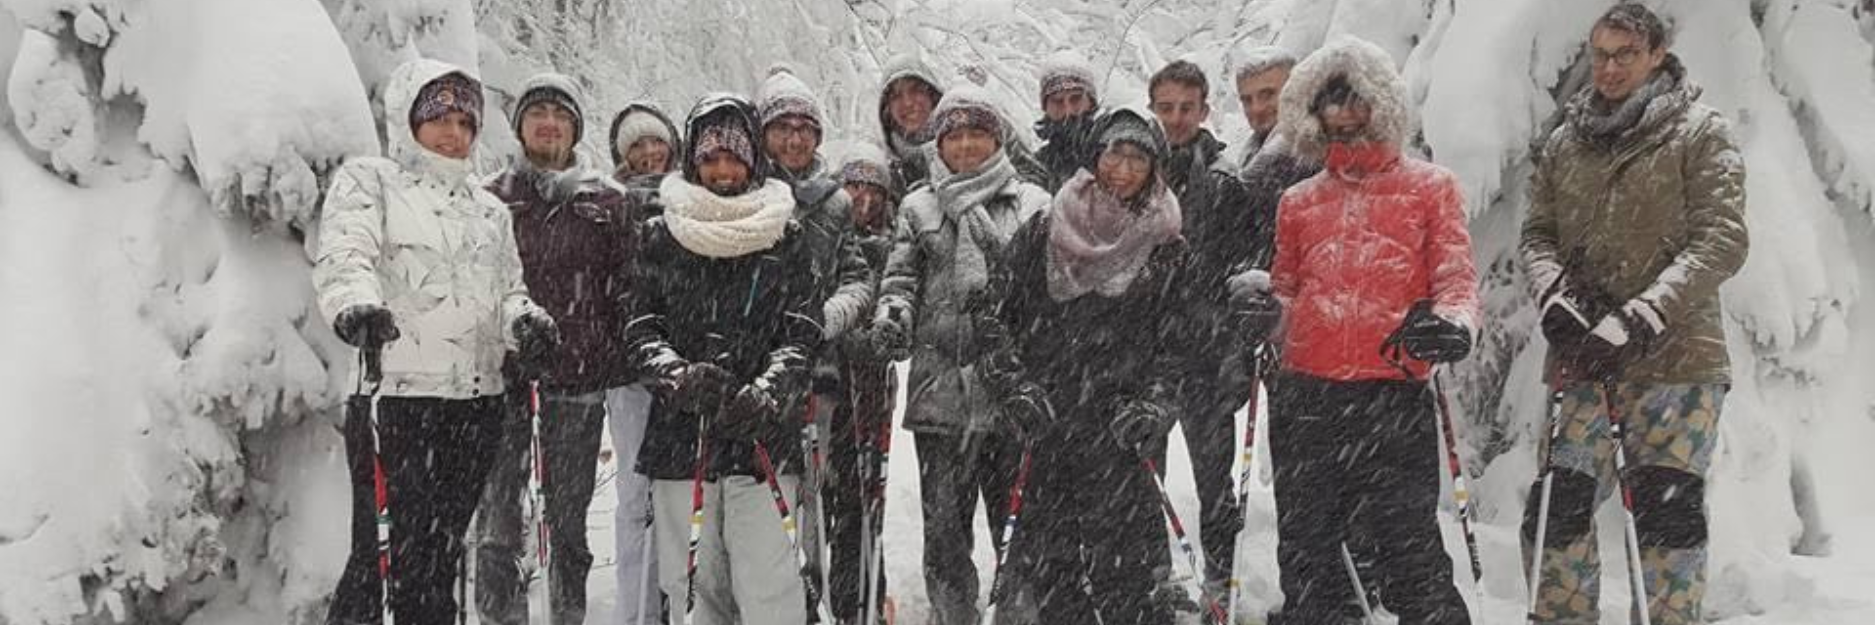 association étudiante photo de groupe de personne au ski